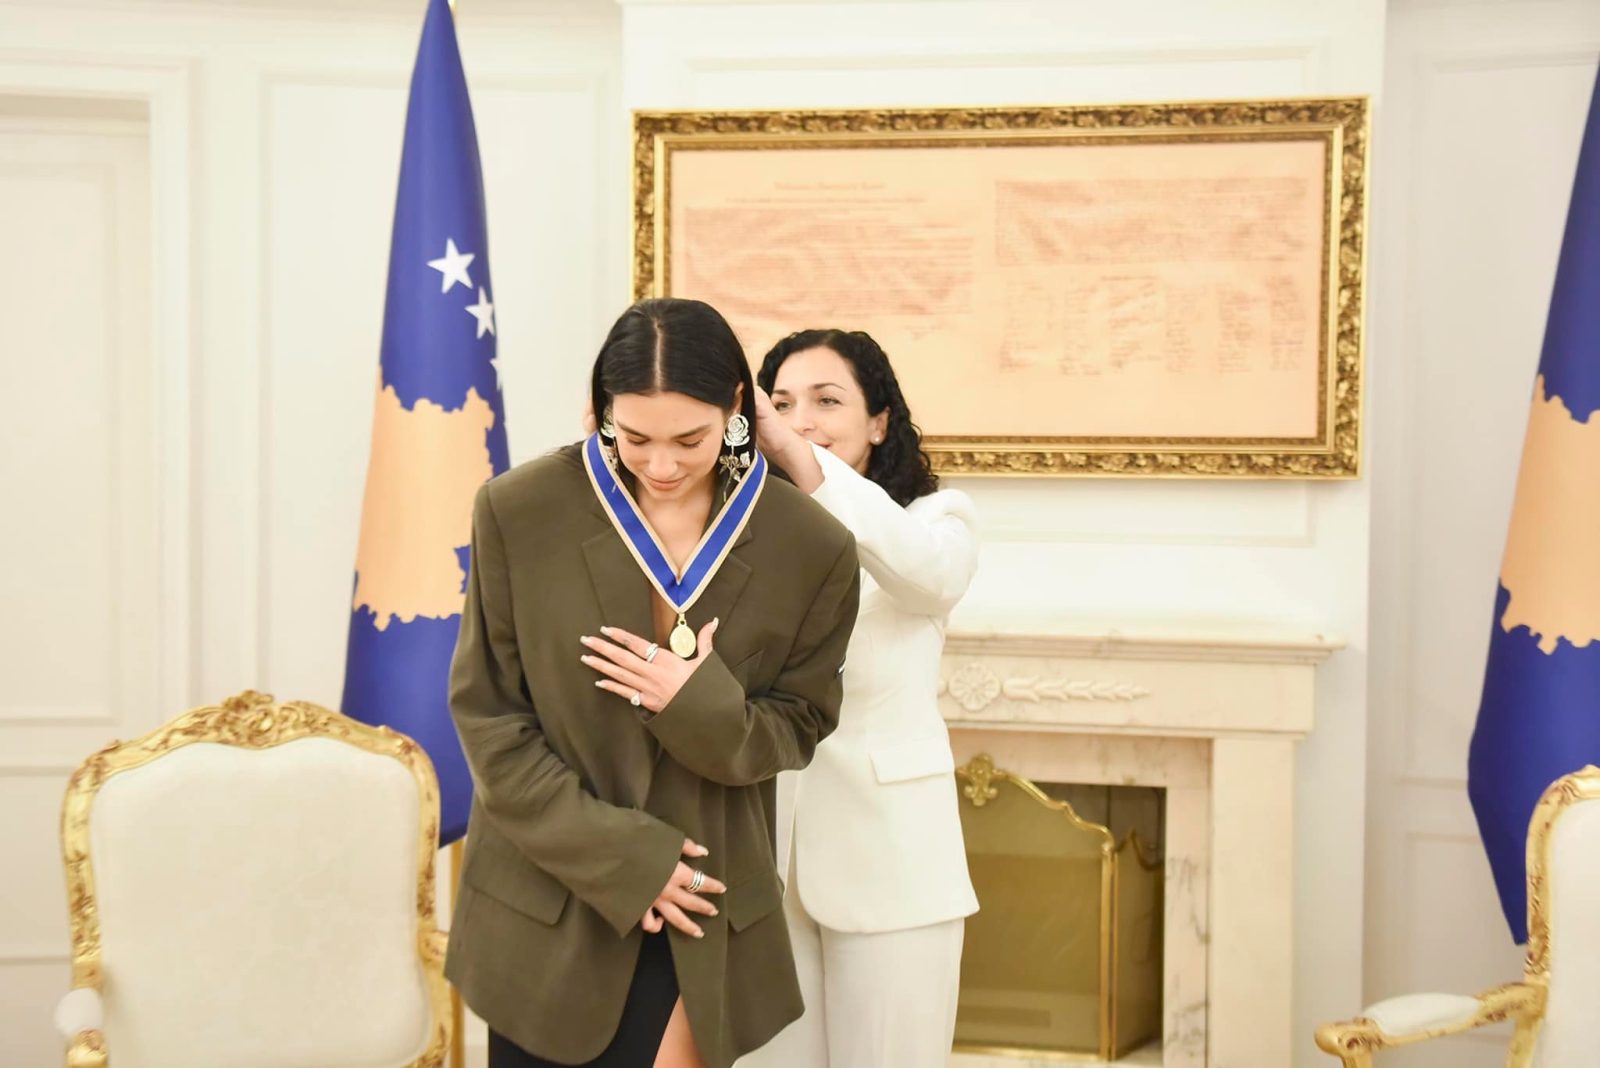 &#8220;Hvala Dua, dobrodošla kući&#8221; Dua Lipa postala počasna ambasadorica Kosova, Life.ba